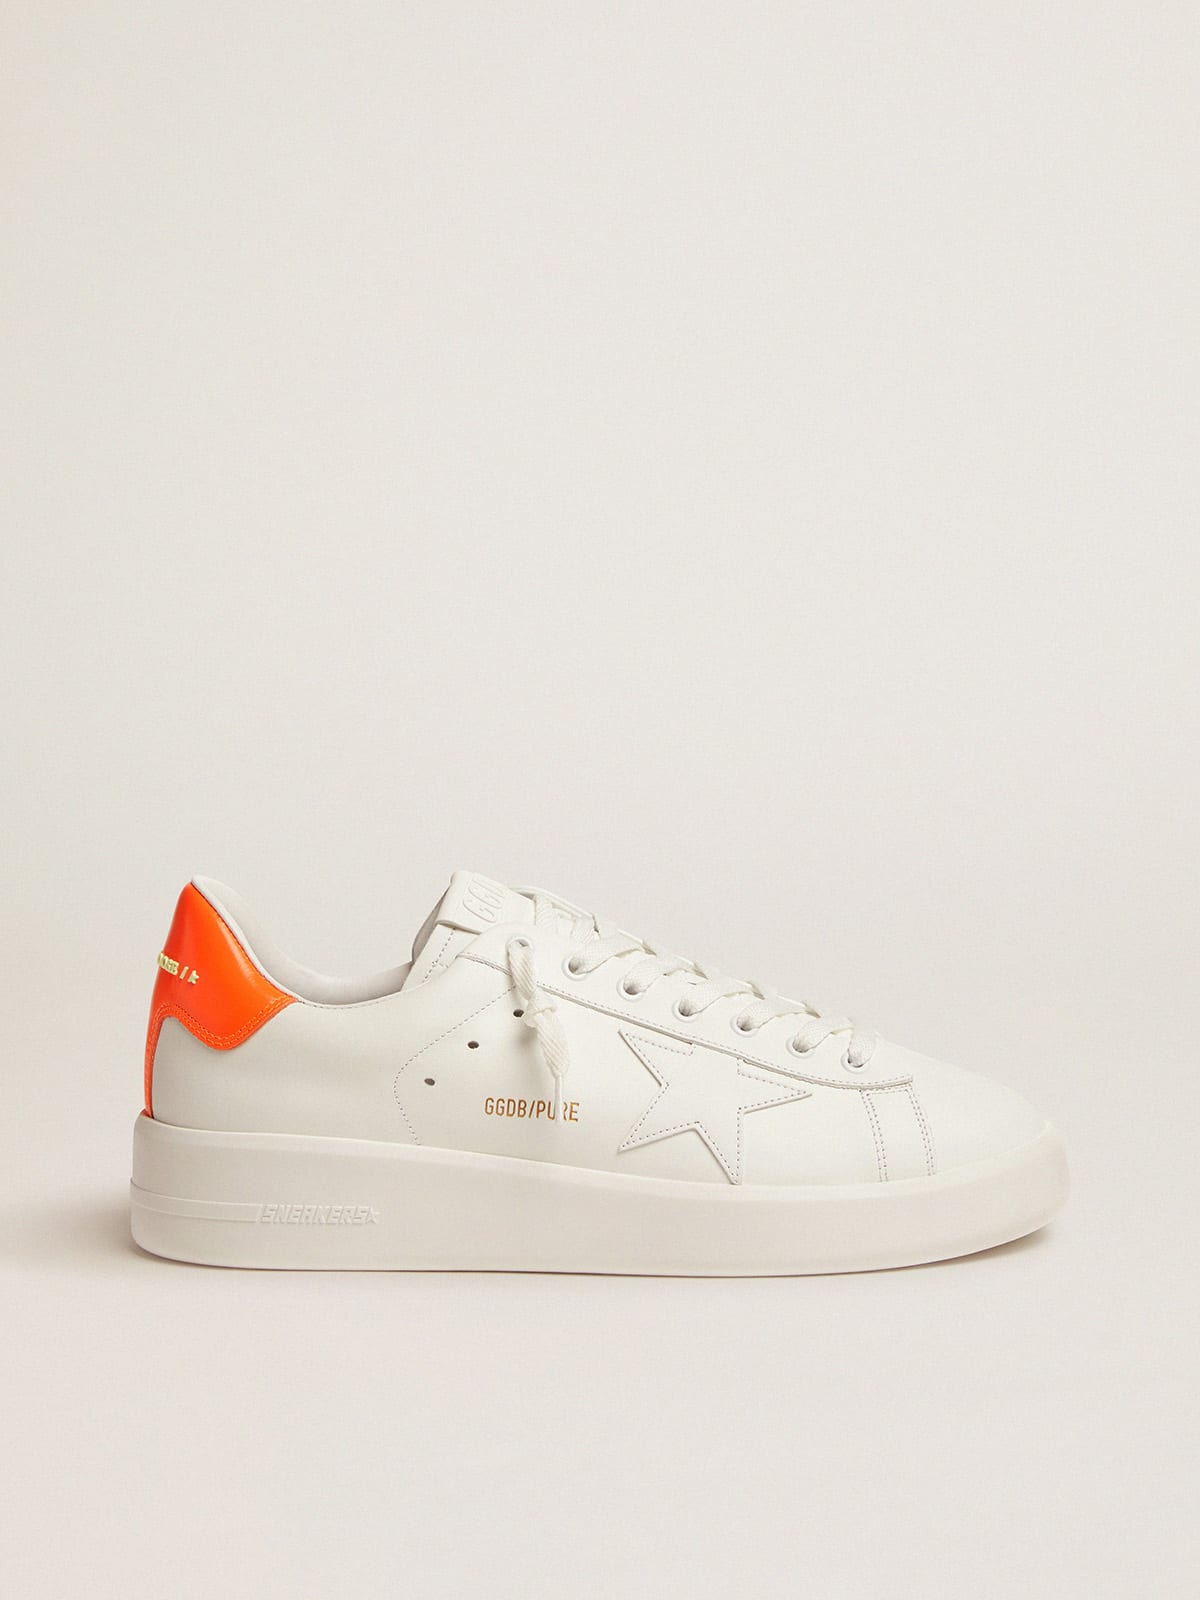 Golden Goose - White Purestar sneakers with fluorescent orange heel tab in 